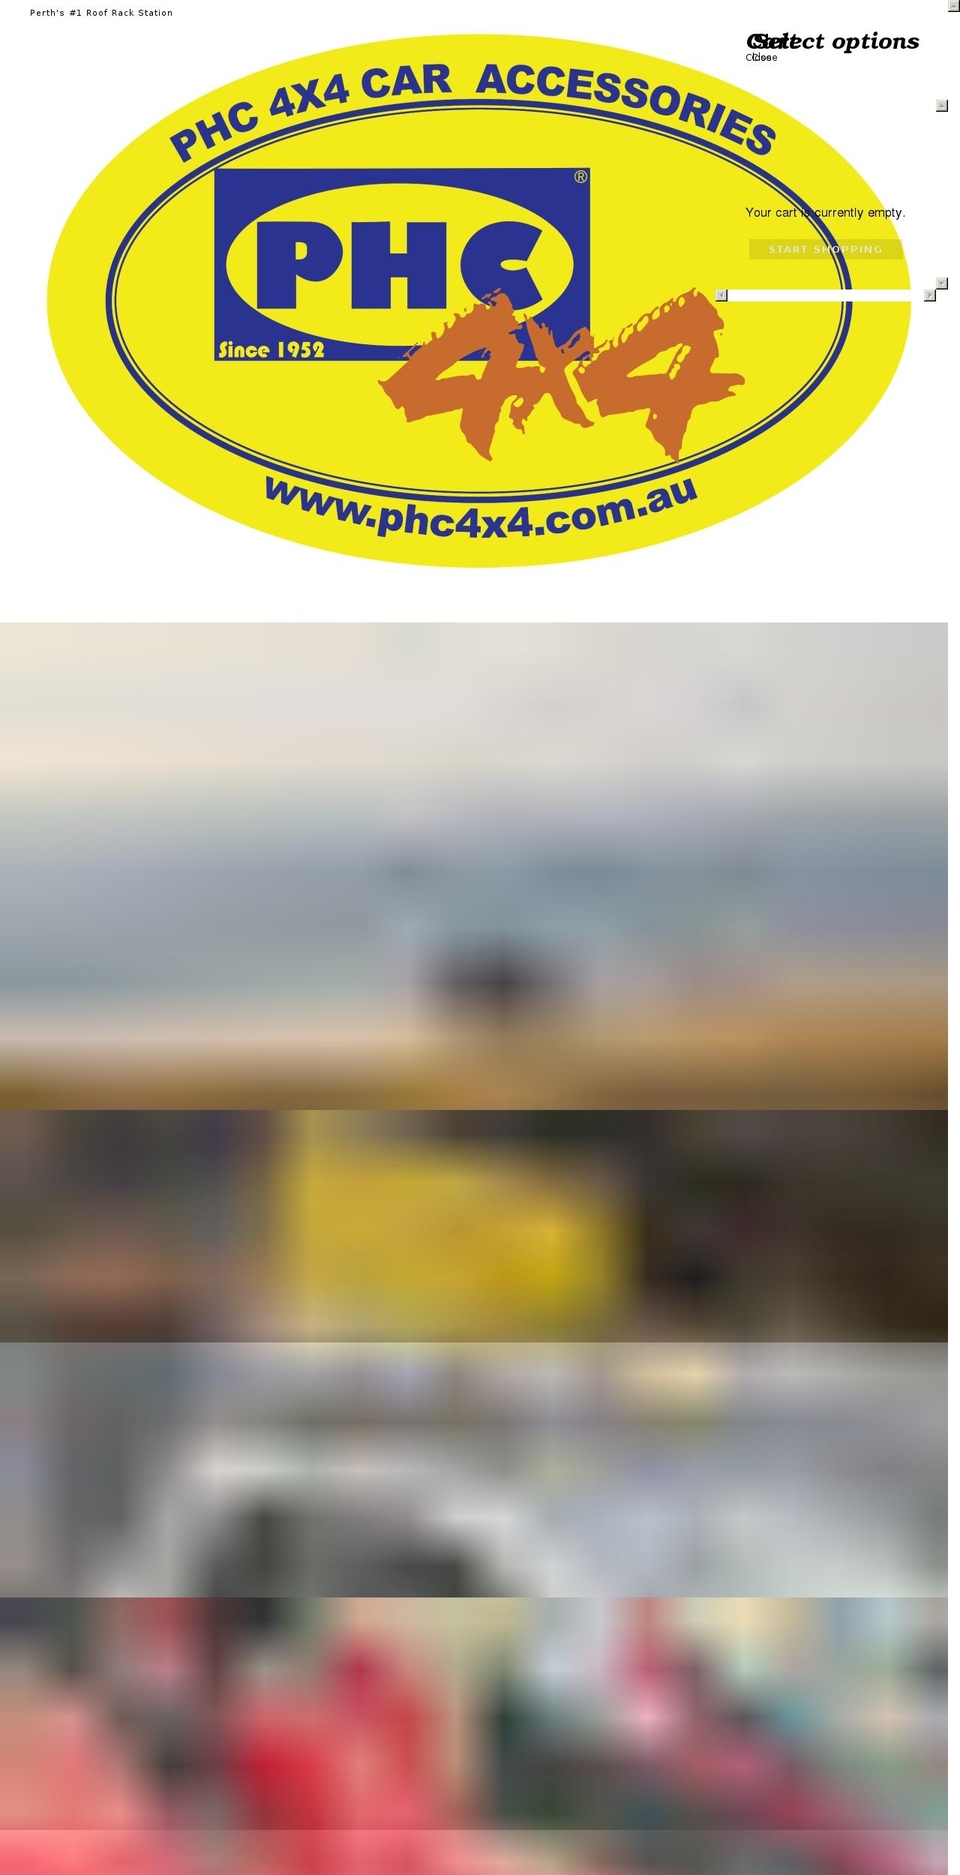 phc4x4.com.au shopify website screenshot